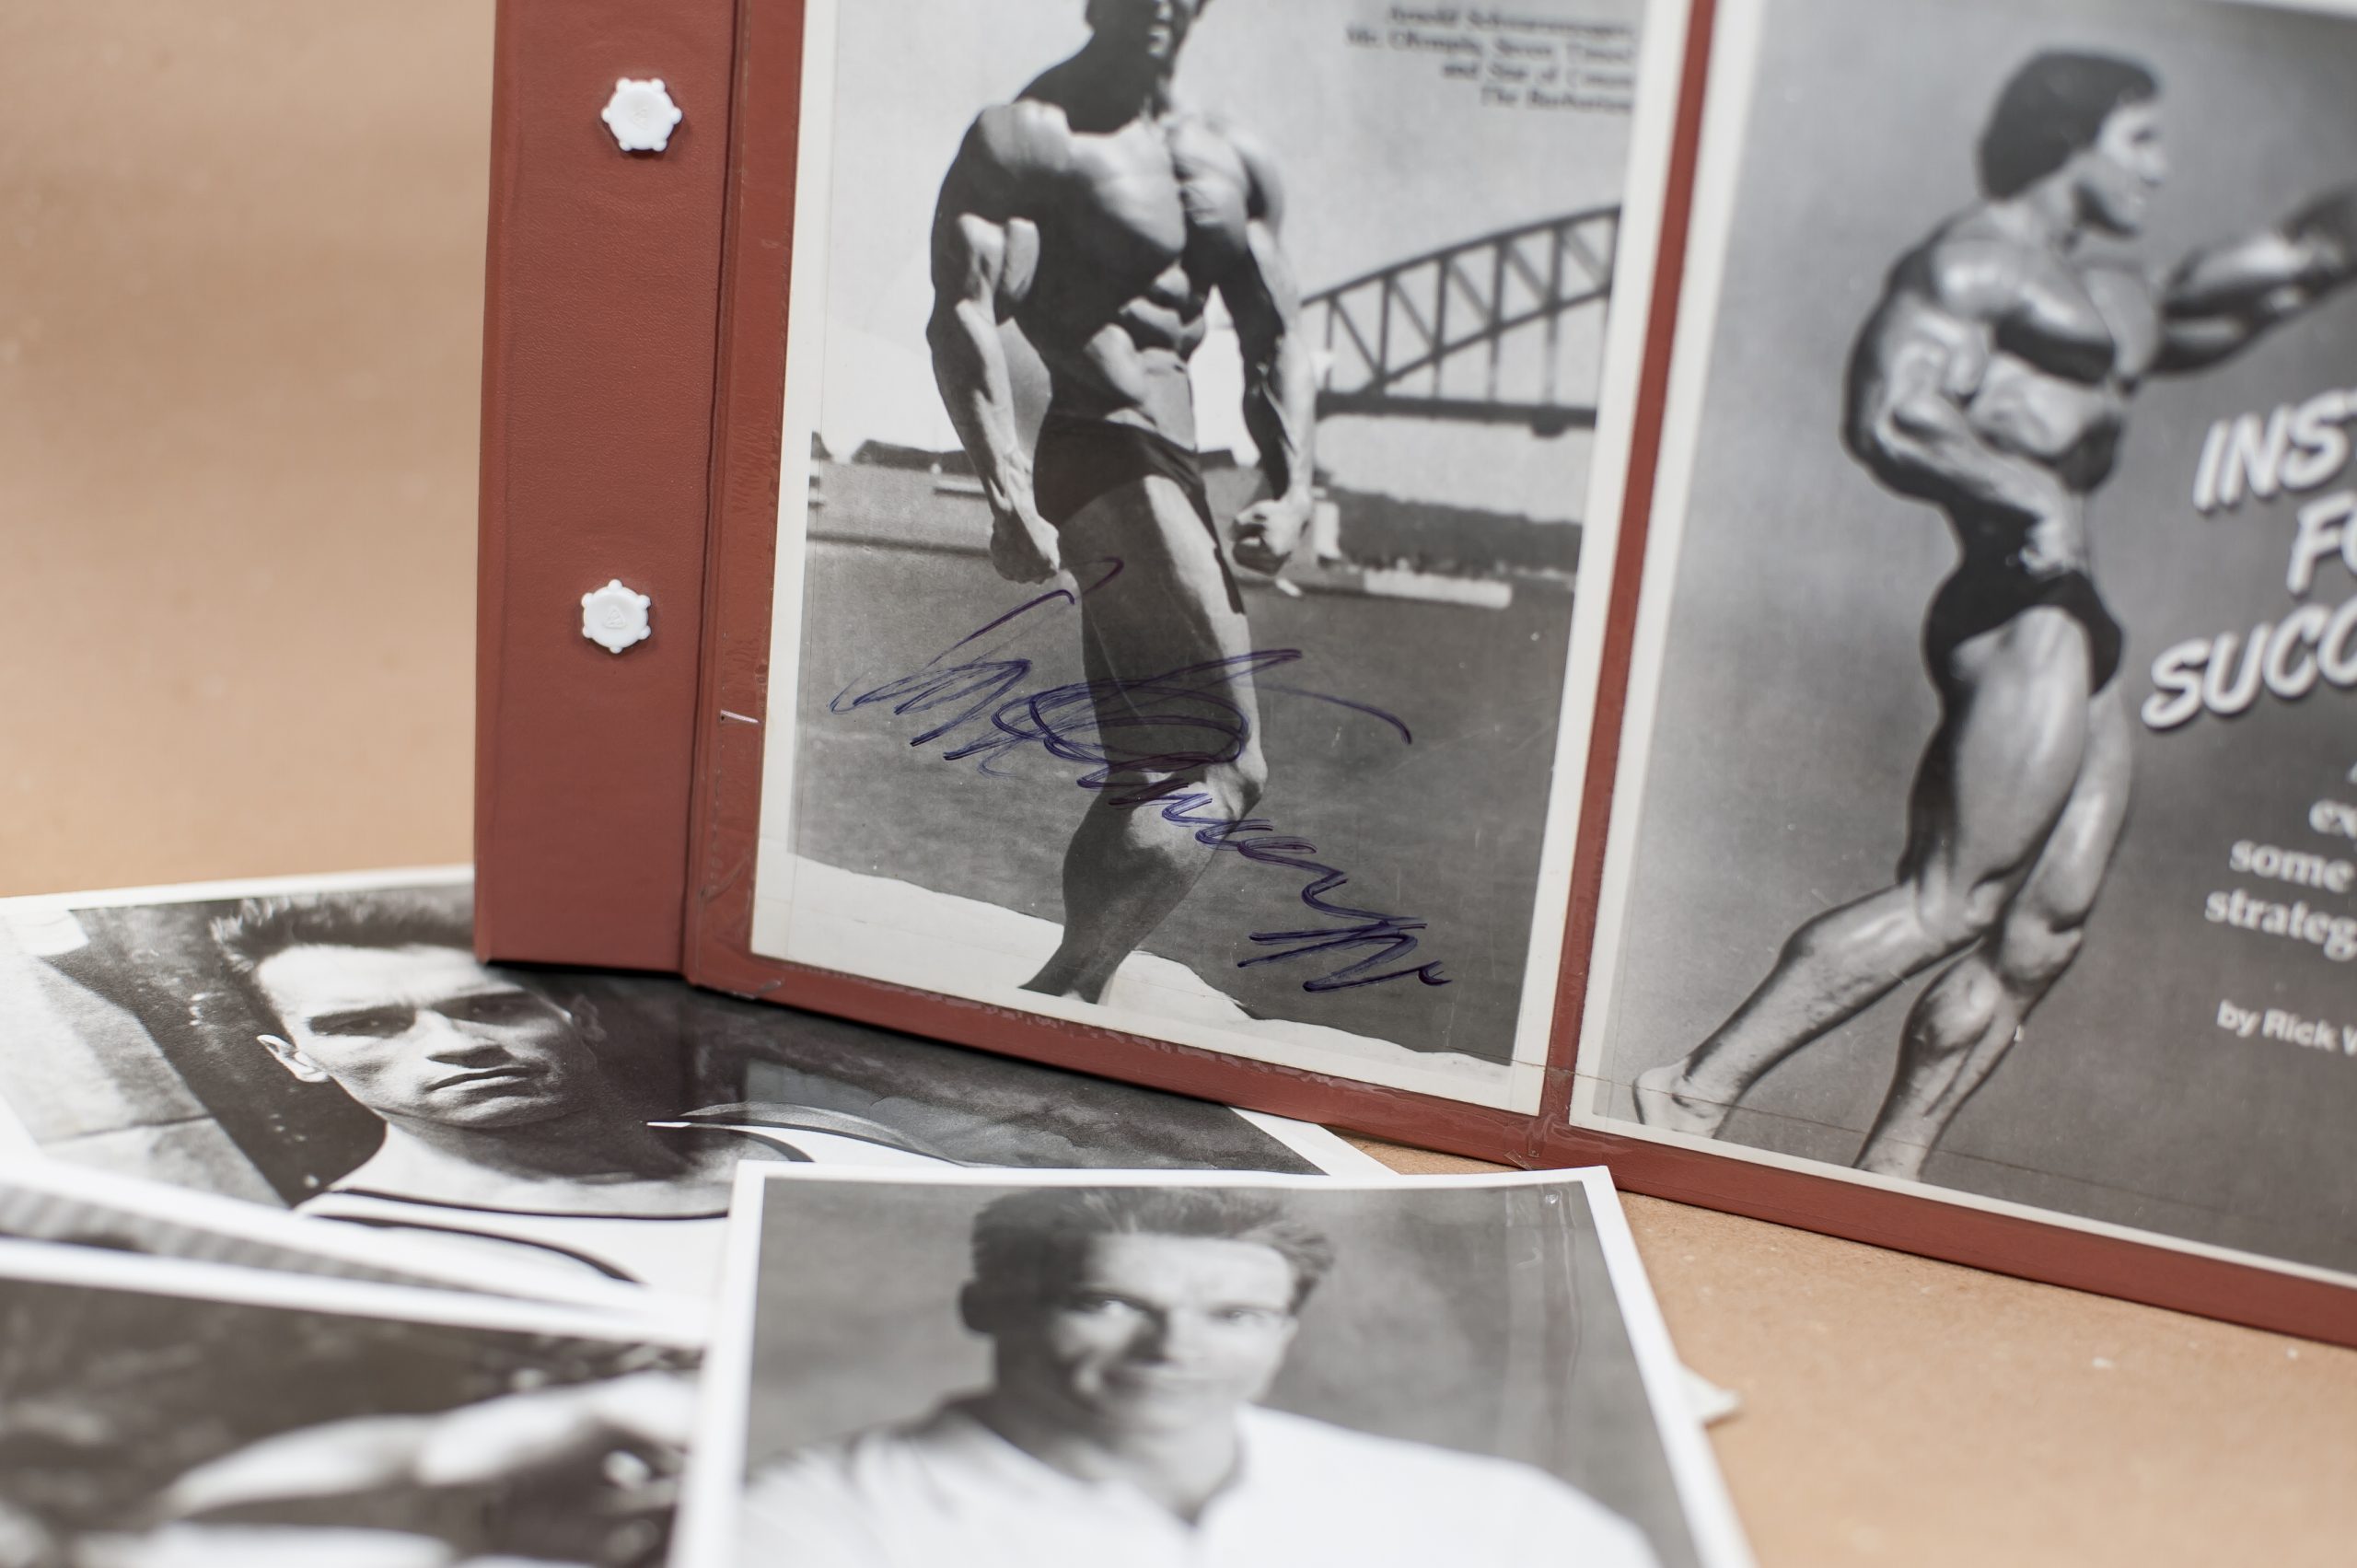 Jakubovi sa podarilo získať podpis Arnolda Schwarzeneggera.